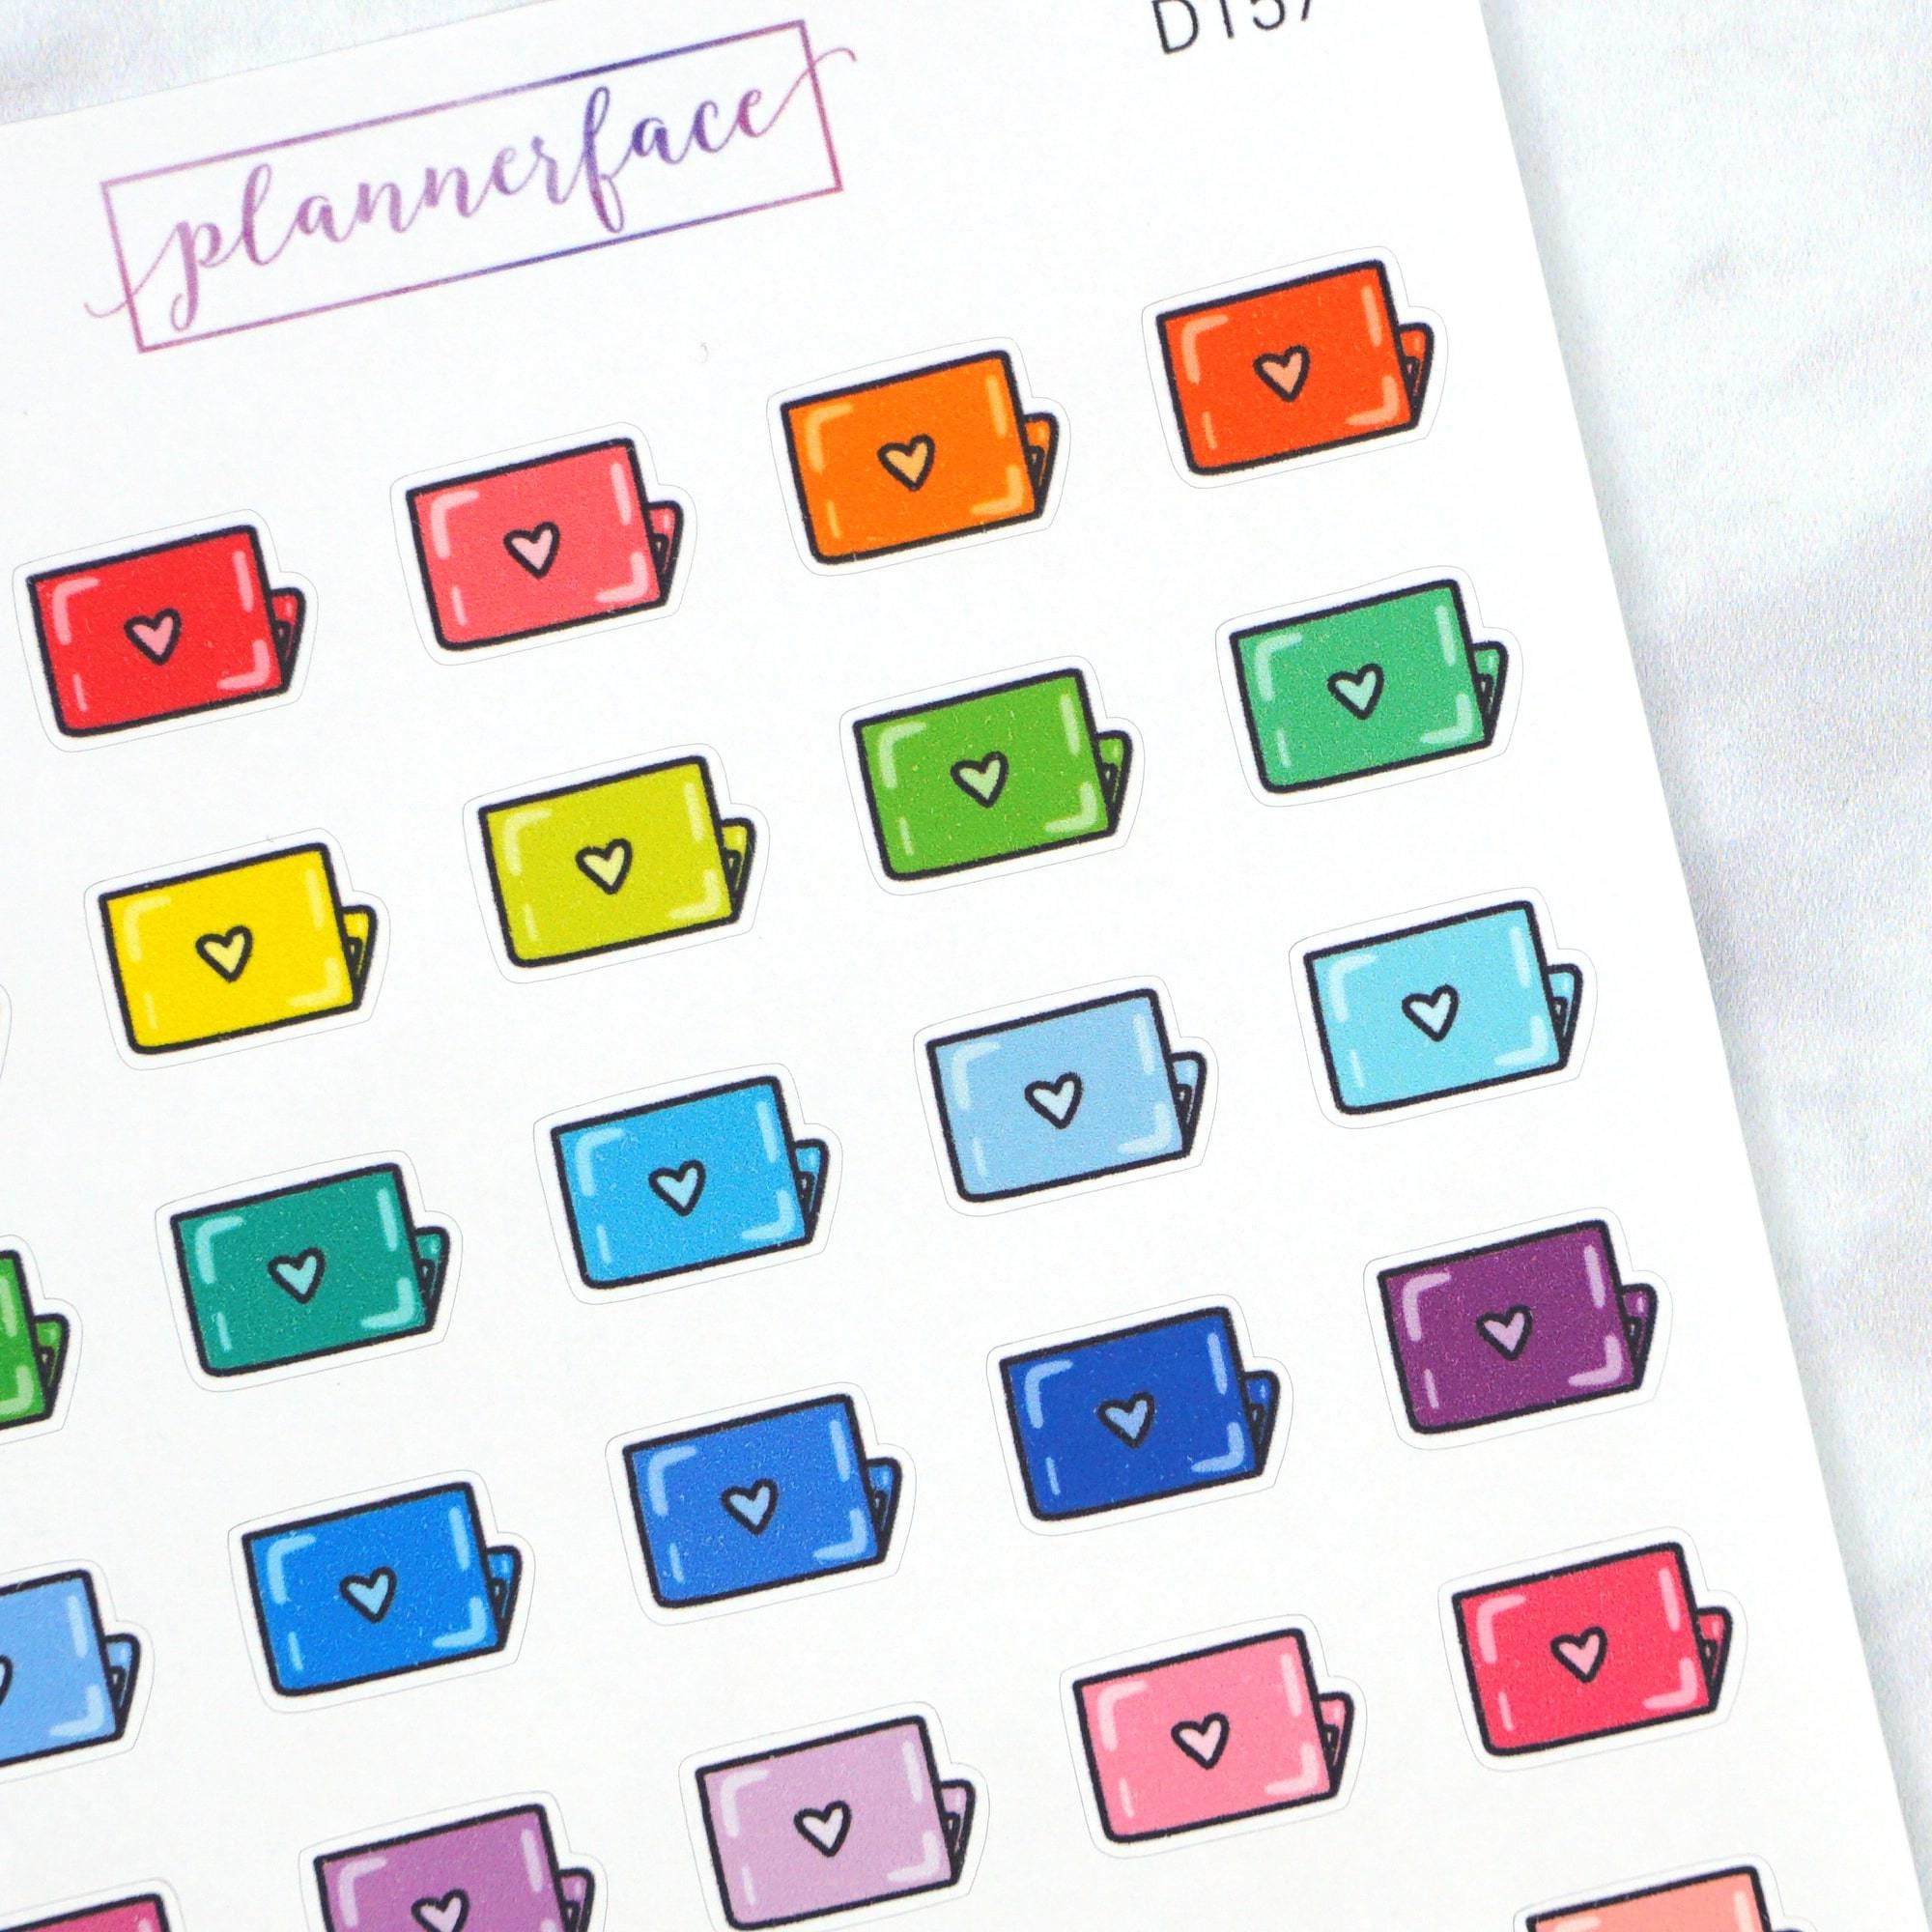 Laptop Multicolour Doodles by Plannerface